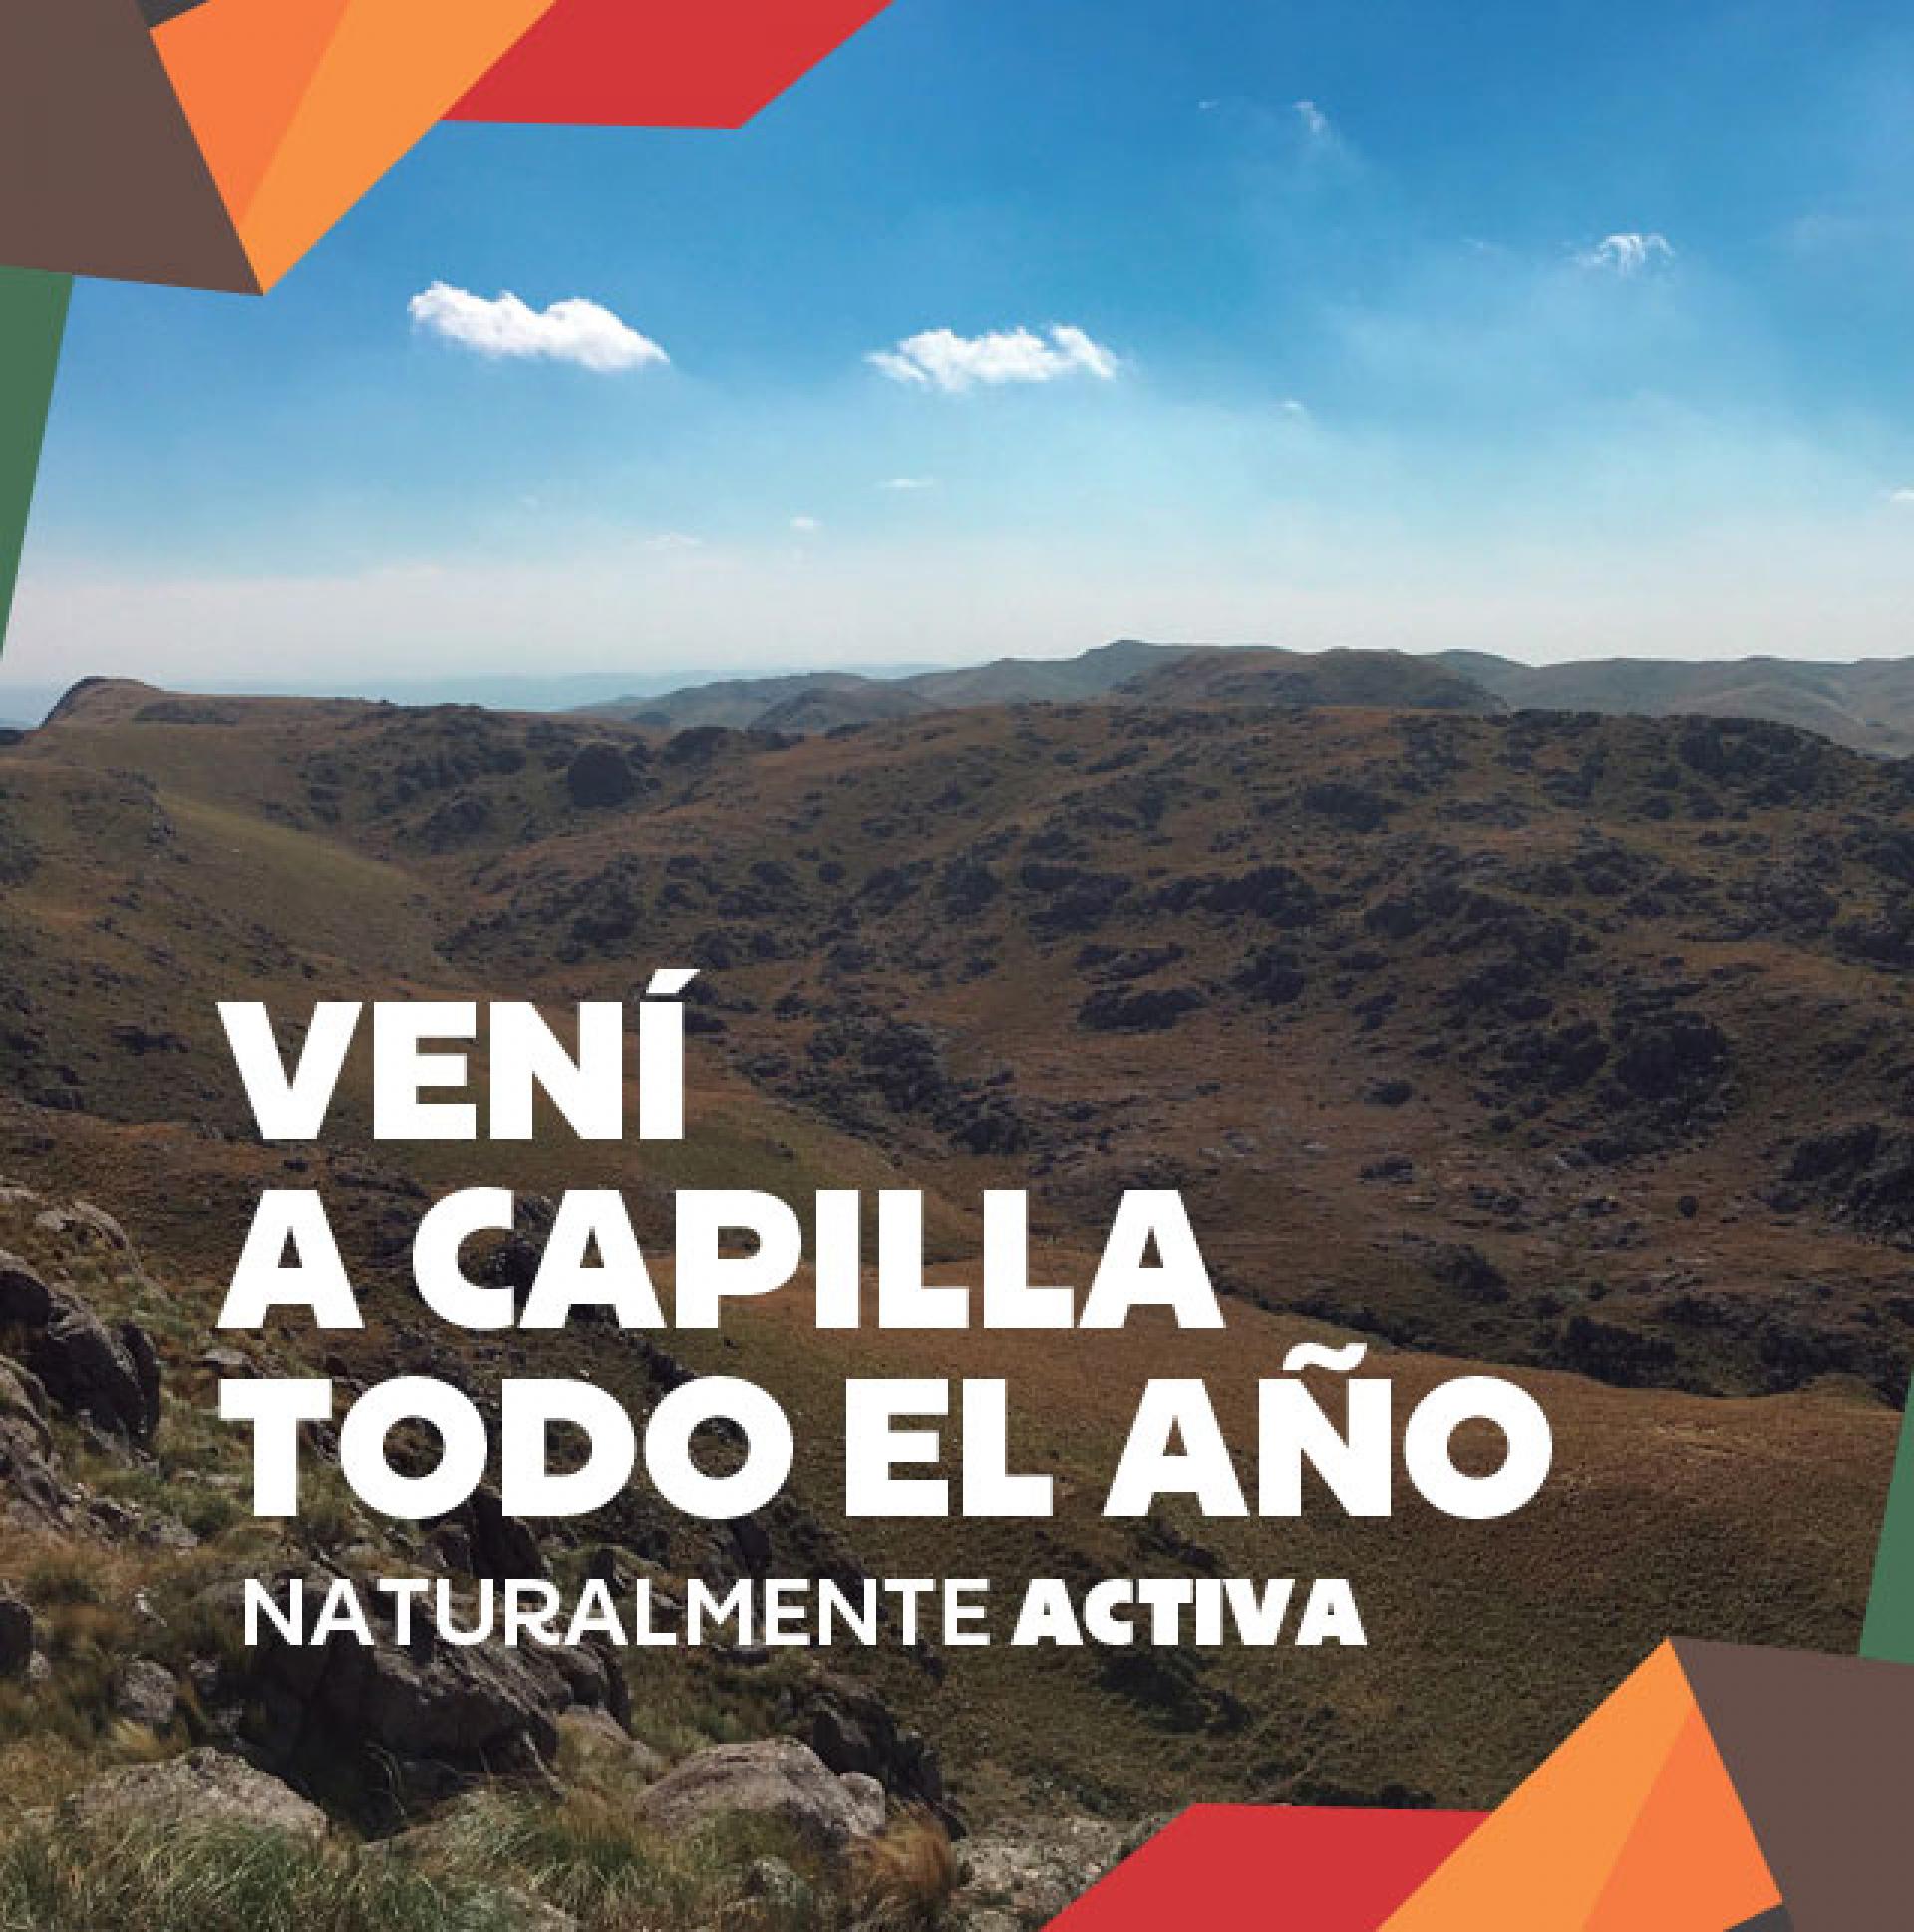 Turismo Capilla del Monte - Valle de Punilla - Córdoba - Argentina